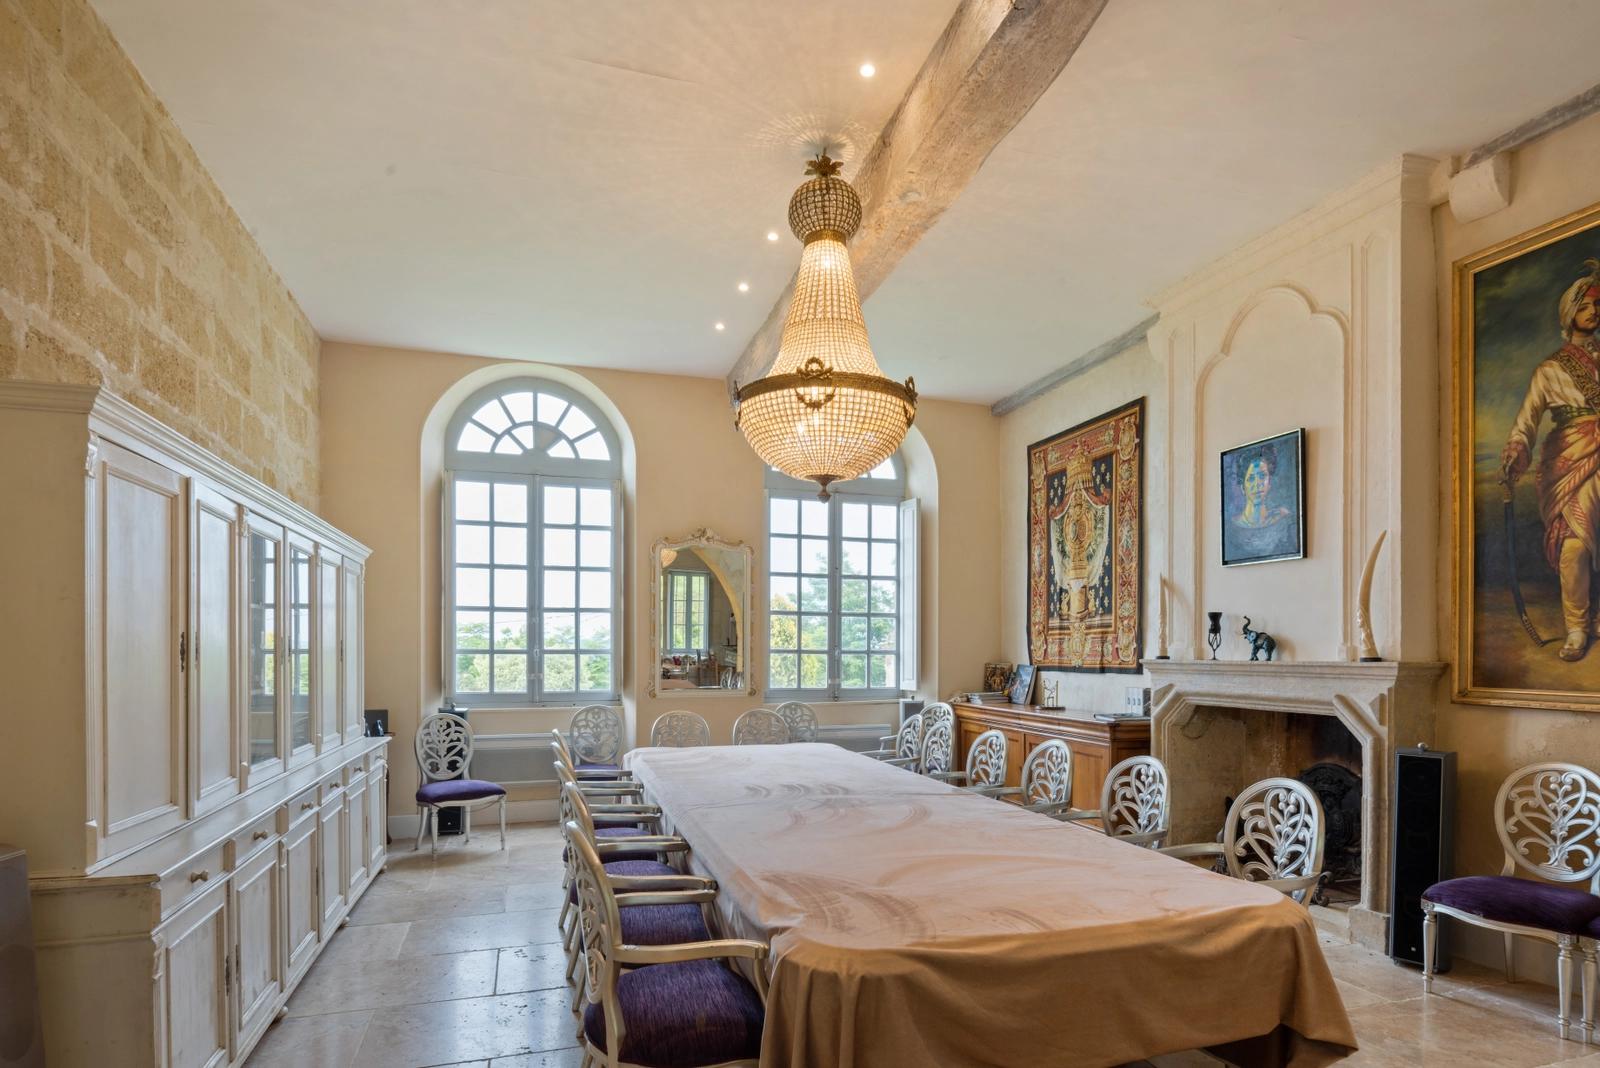 Dormitorio dentro Castillo del siglo XII, productor de vino - 1